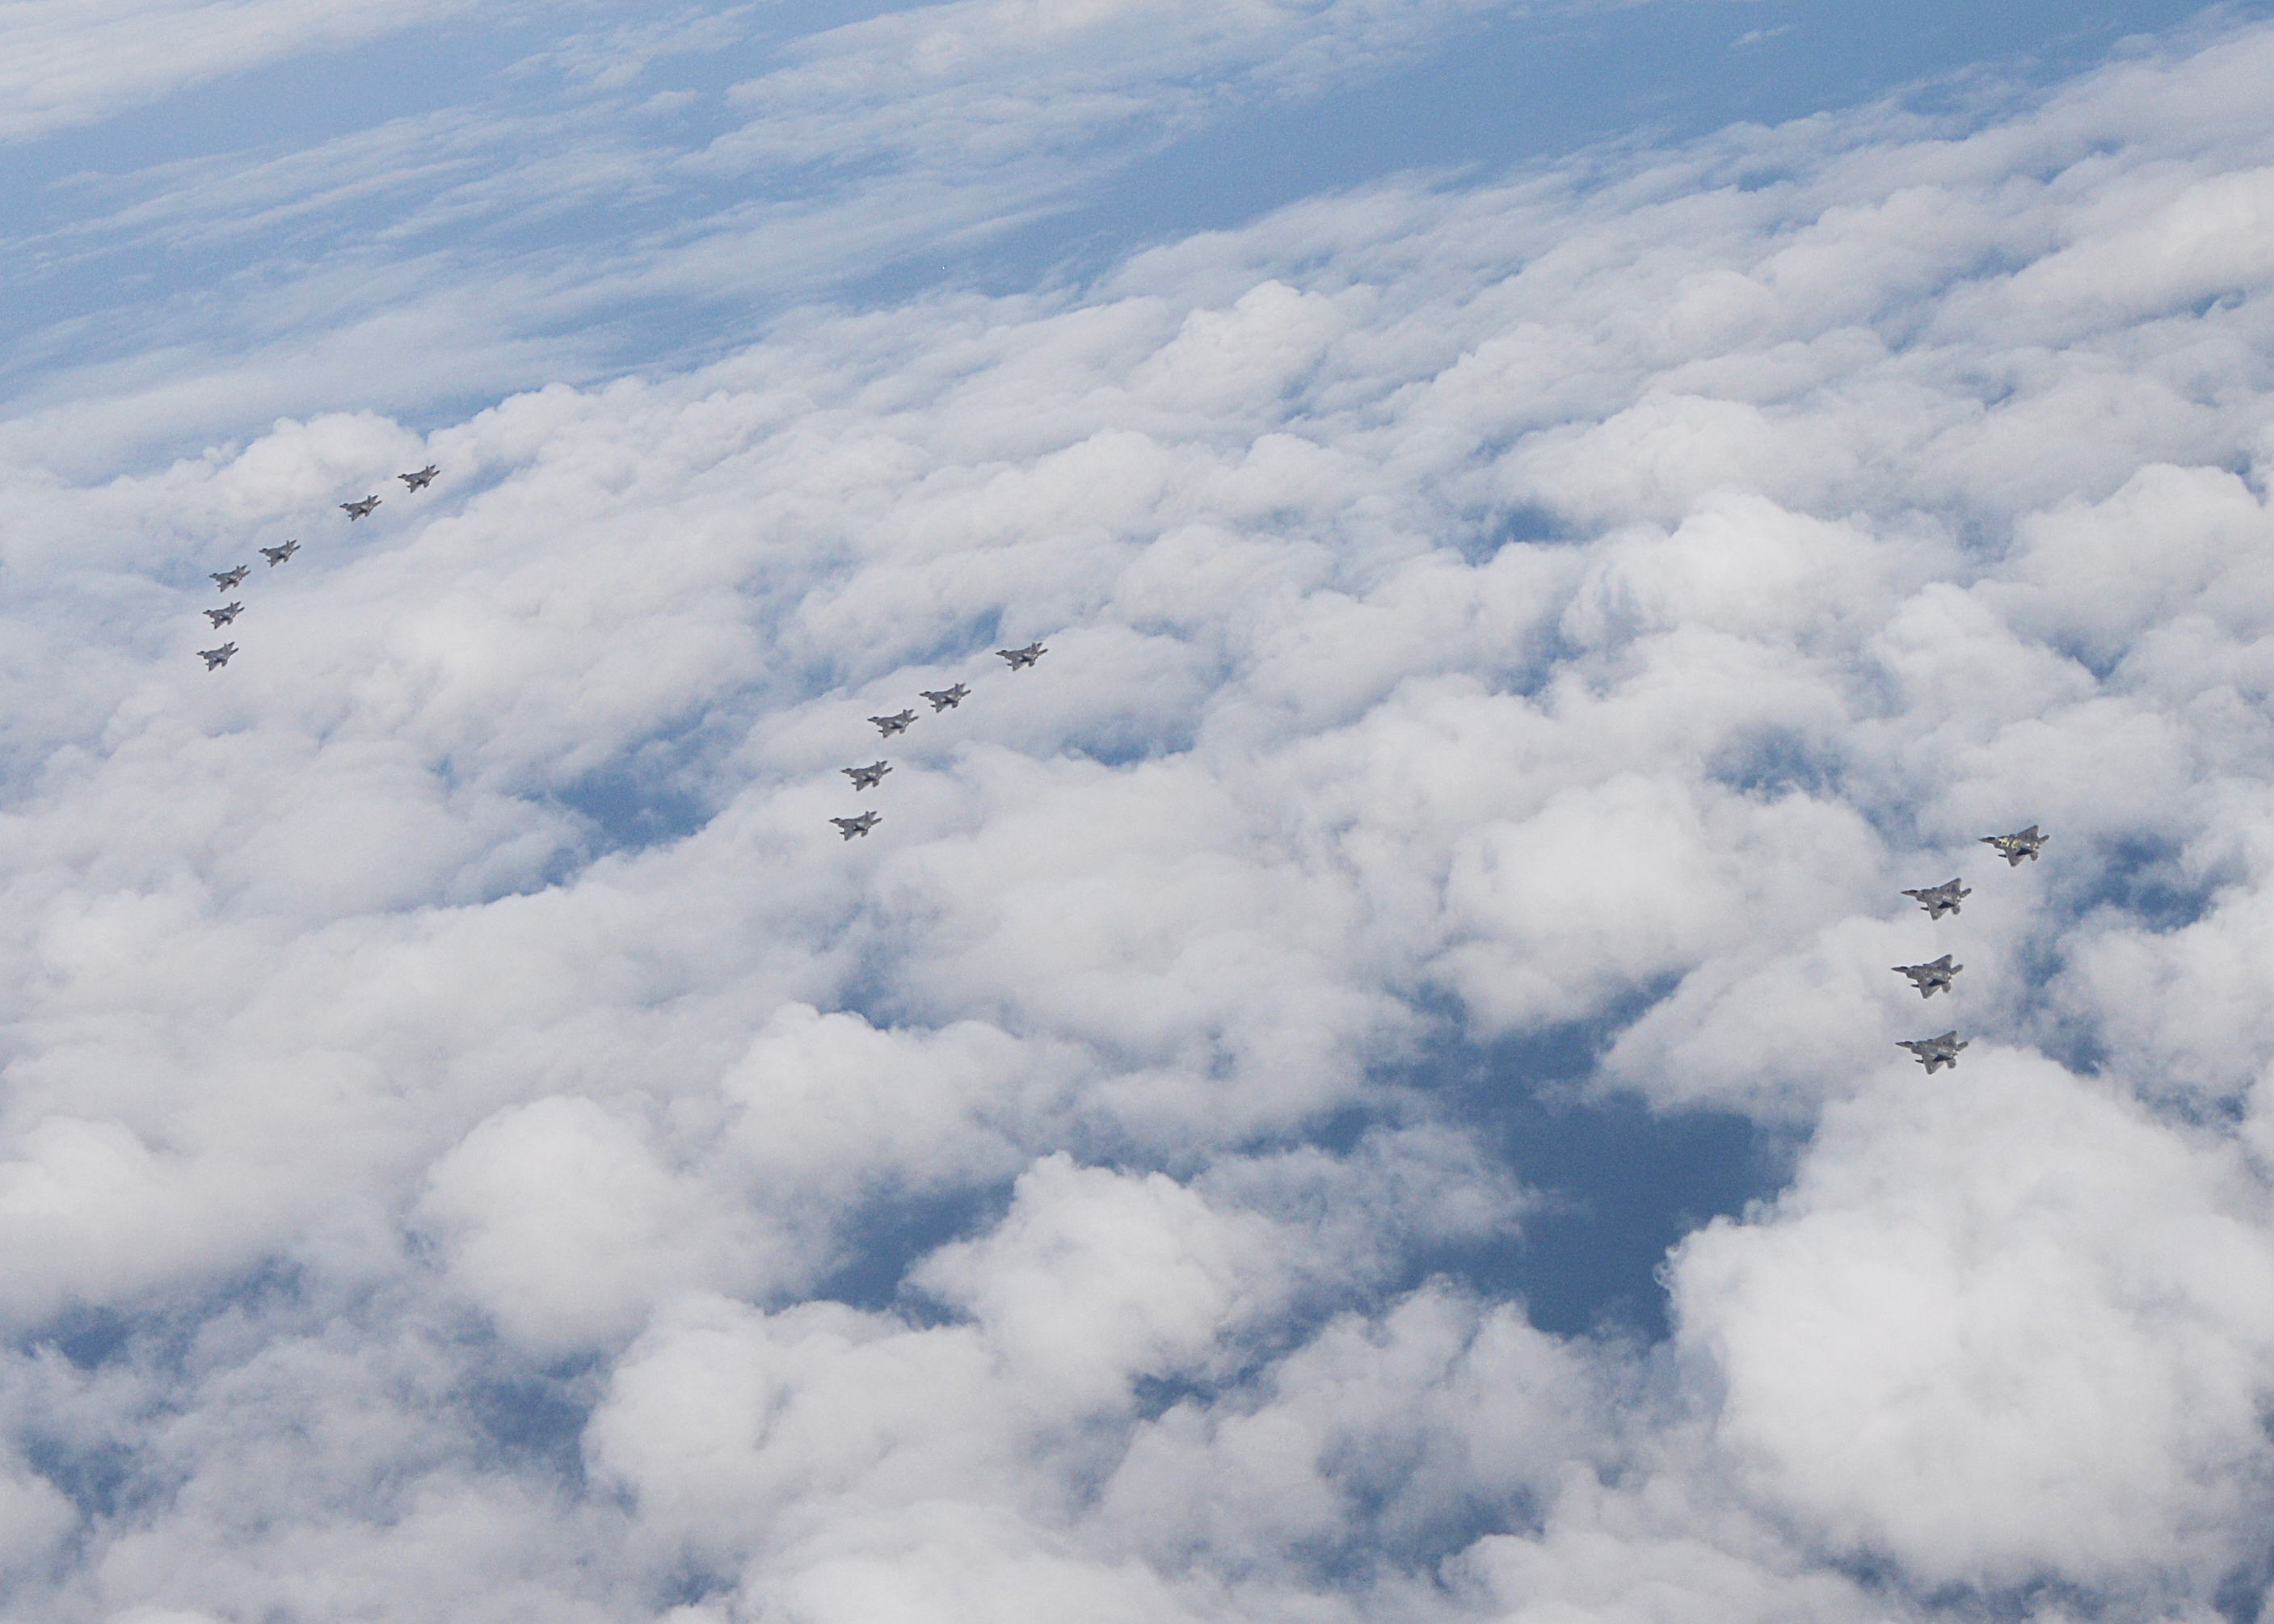 Демонстрация воздушной мощи 95-й истребительной эскадрильи авиабазы Tyndall, шт. Флорида: 15 F-22 Raptor над Мексиканским заливом, фото сделано 5 ноября 2015 года